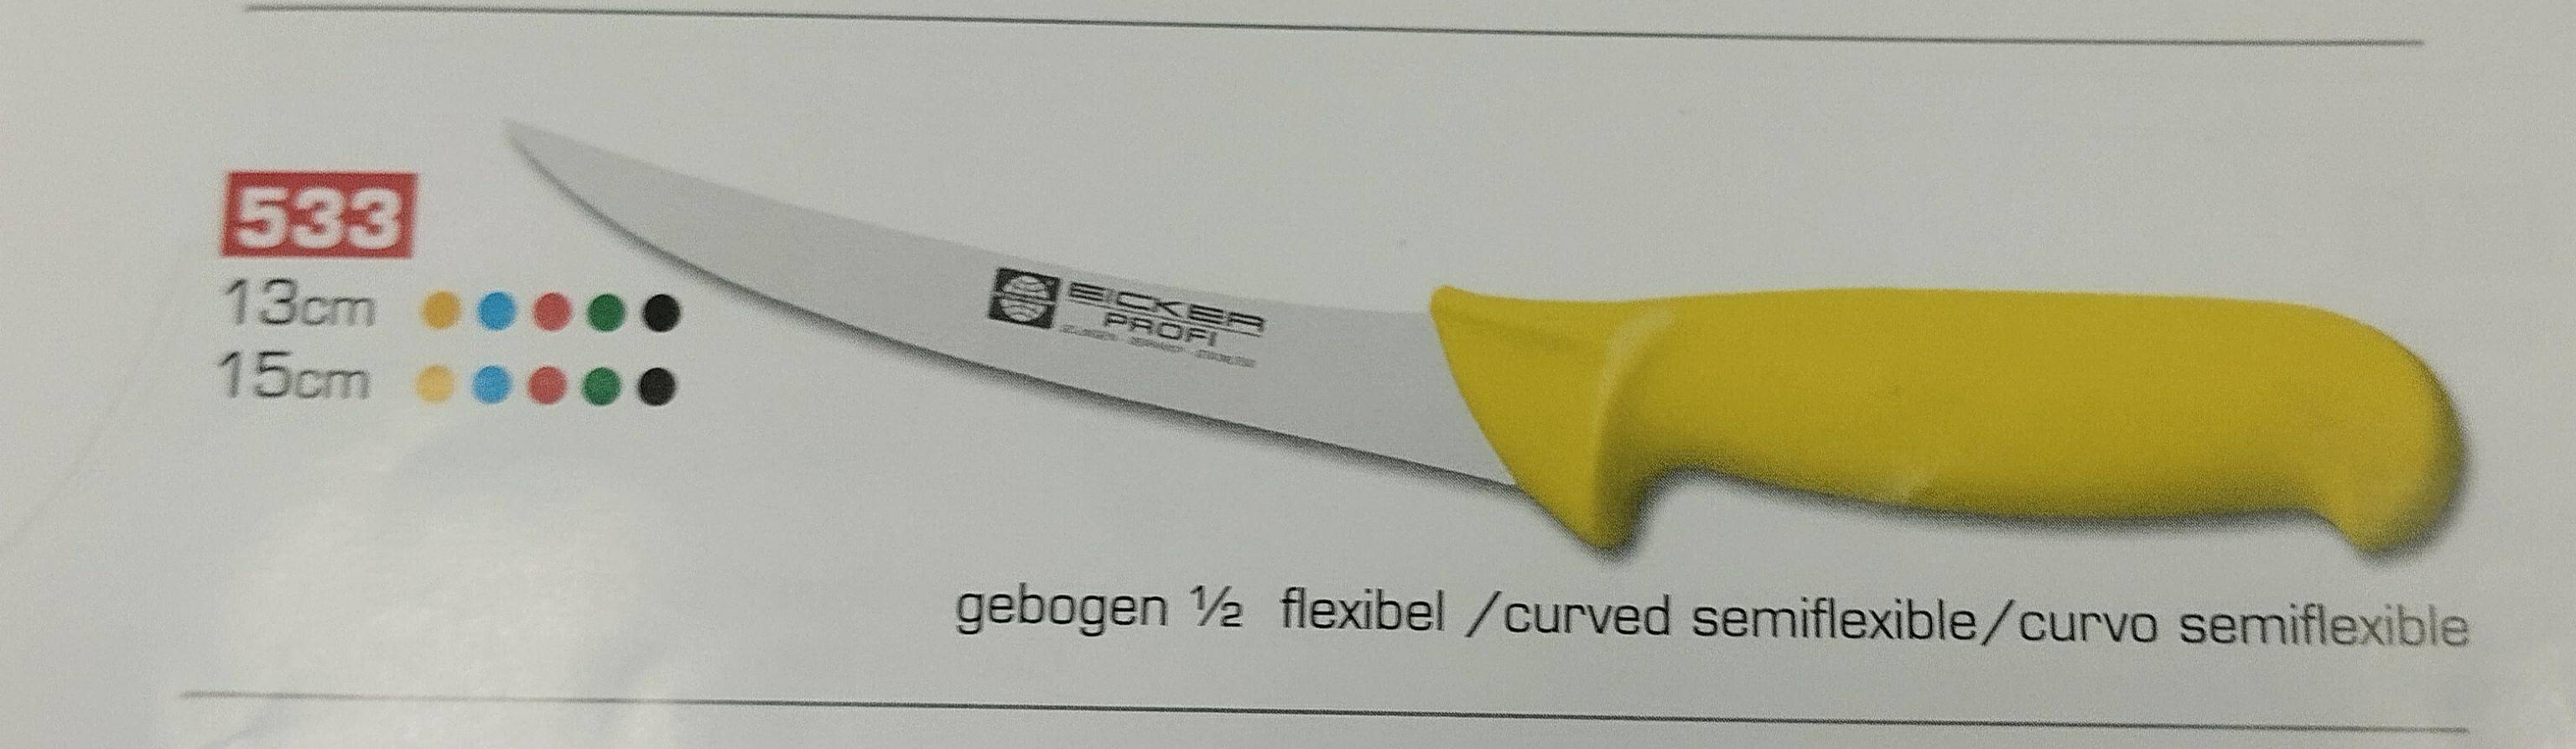 nóż EICKER 6753313 1/2 flexv żółty